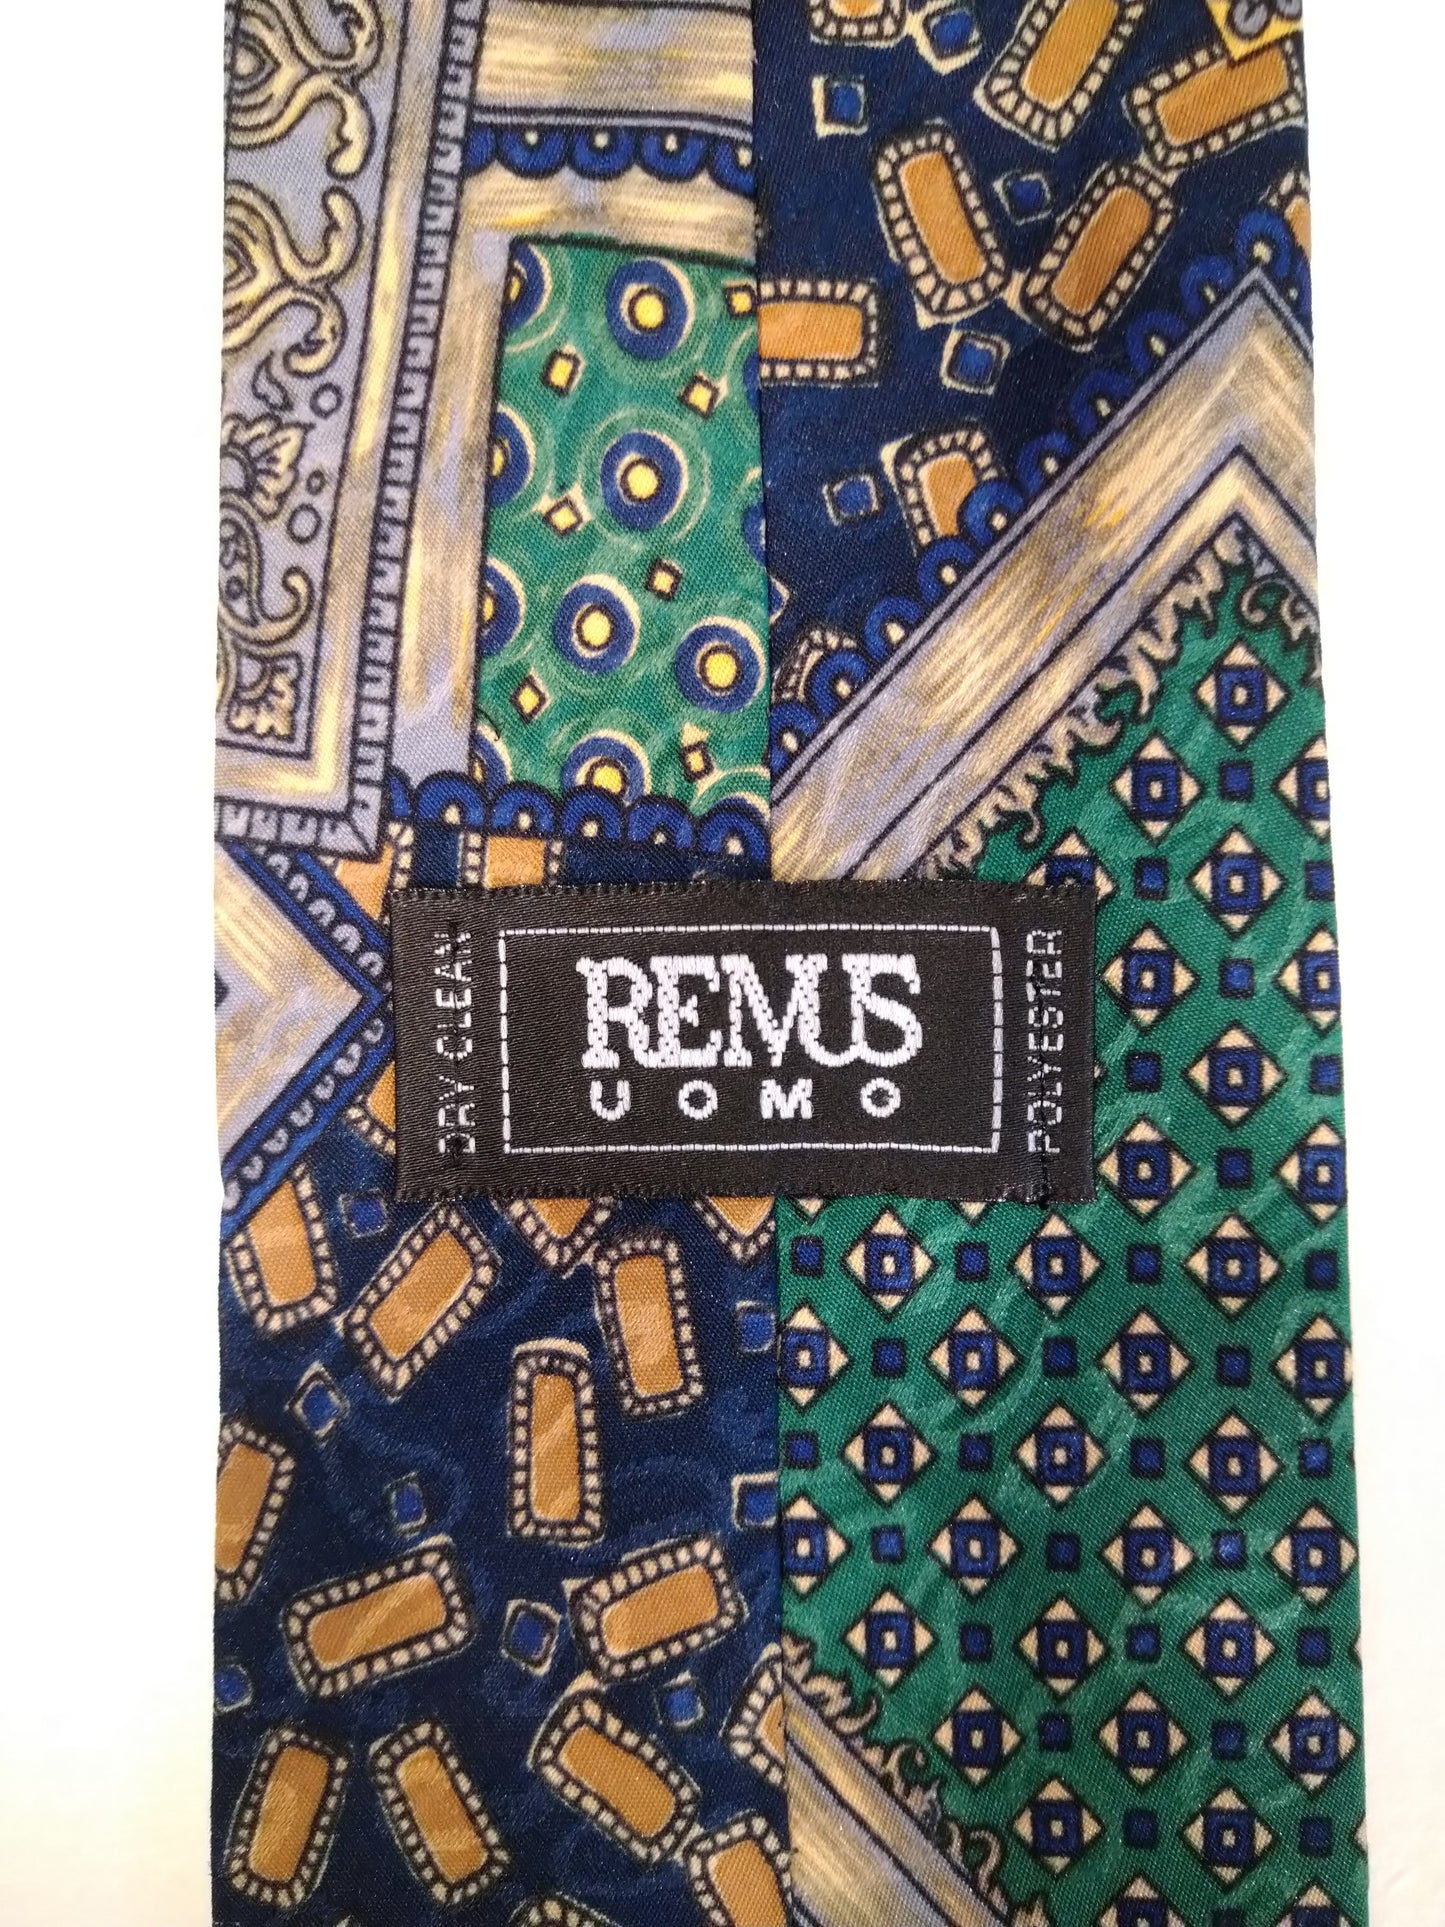 Remus Uomo polyester stropdas. Groen blauw motief.